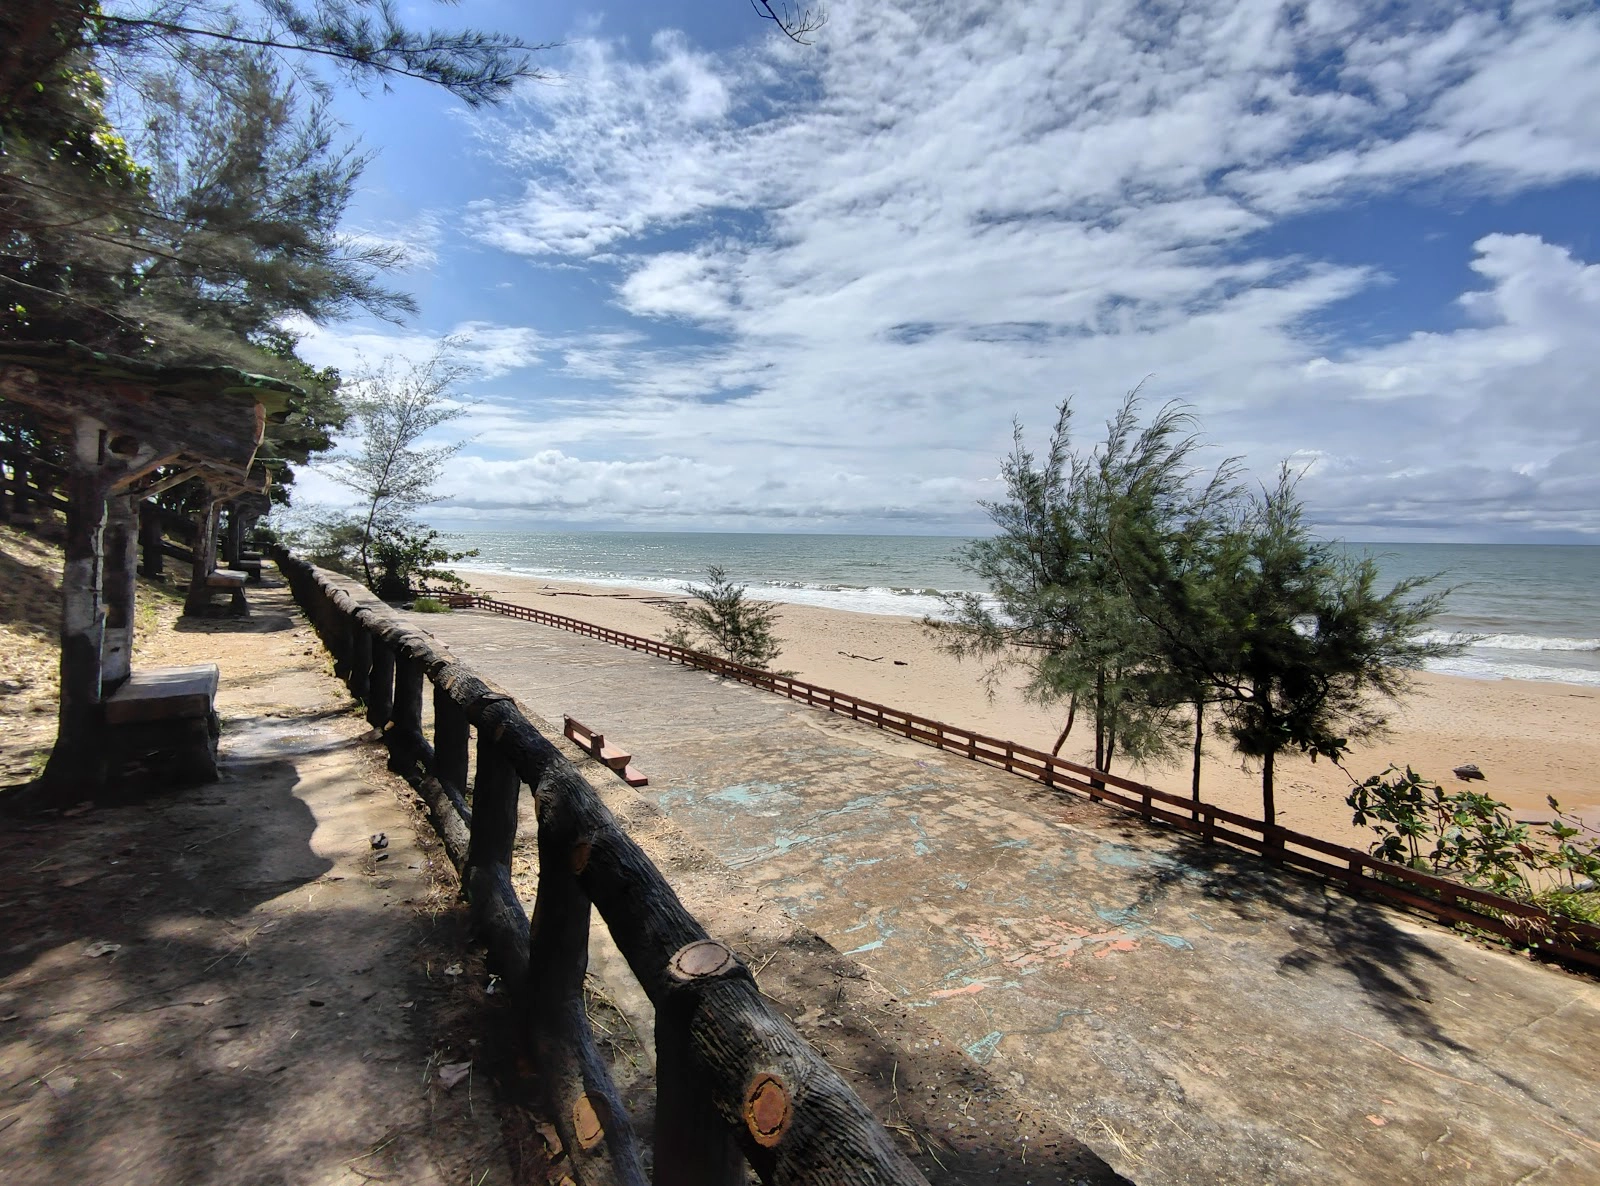  Berakas  strand - Brunei